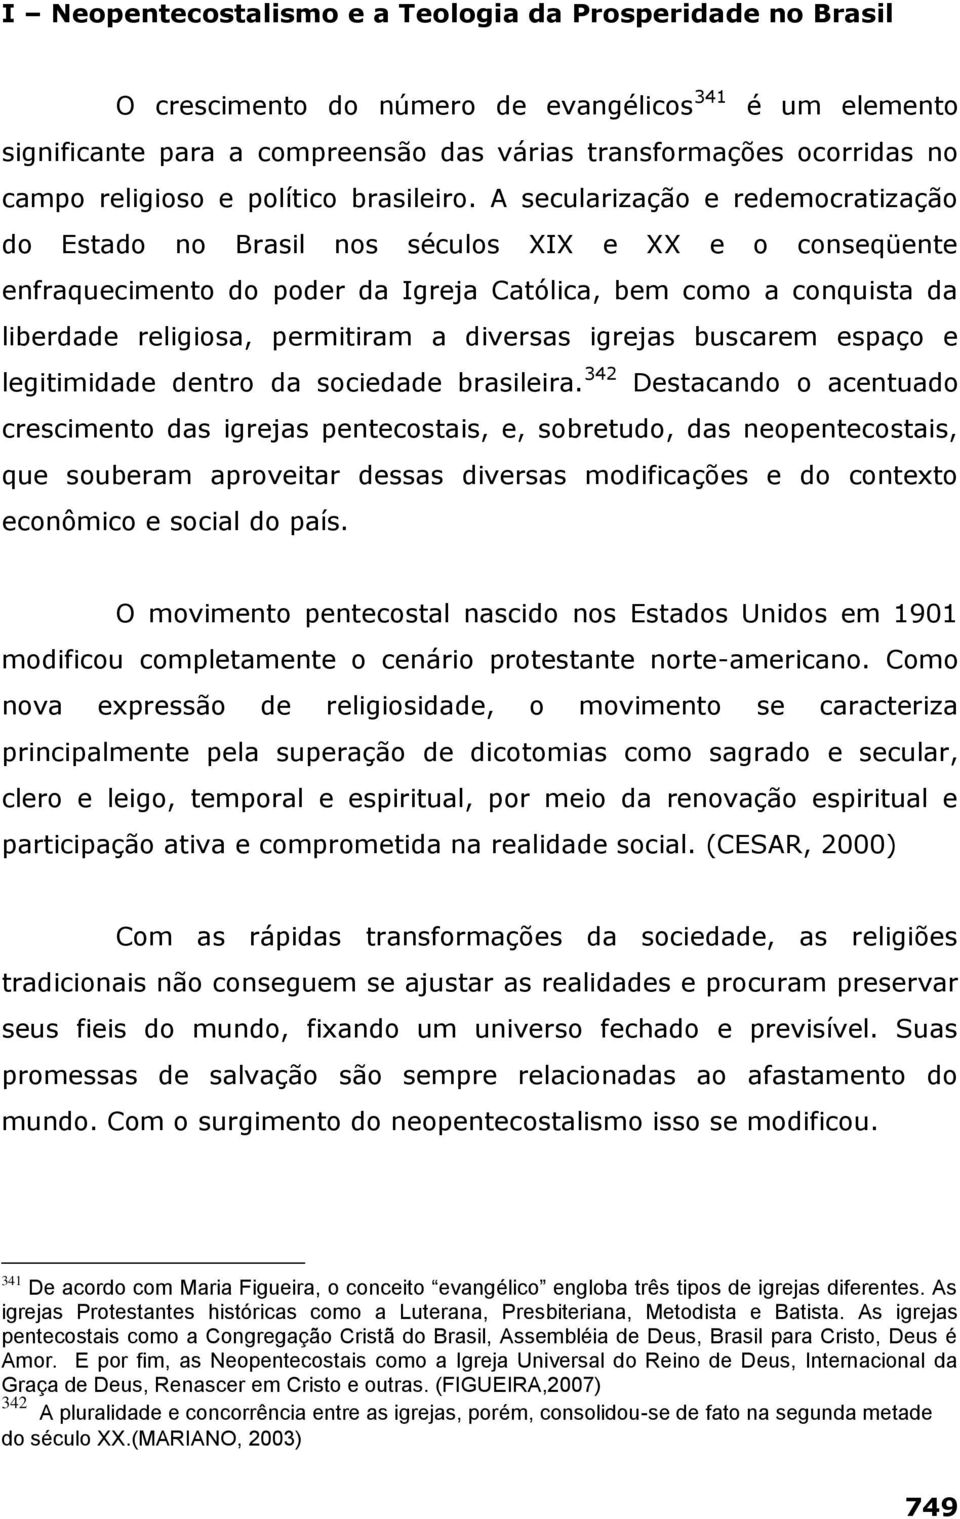 A secularização e redemocratização do Estado no Brasil nos séculos XIX e XX e o conseqüente enfraquecimento do poder da Igreja Católica, bem como a conquista da liberdade religiosa, permitiram a